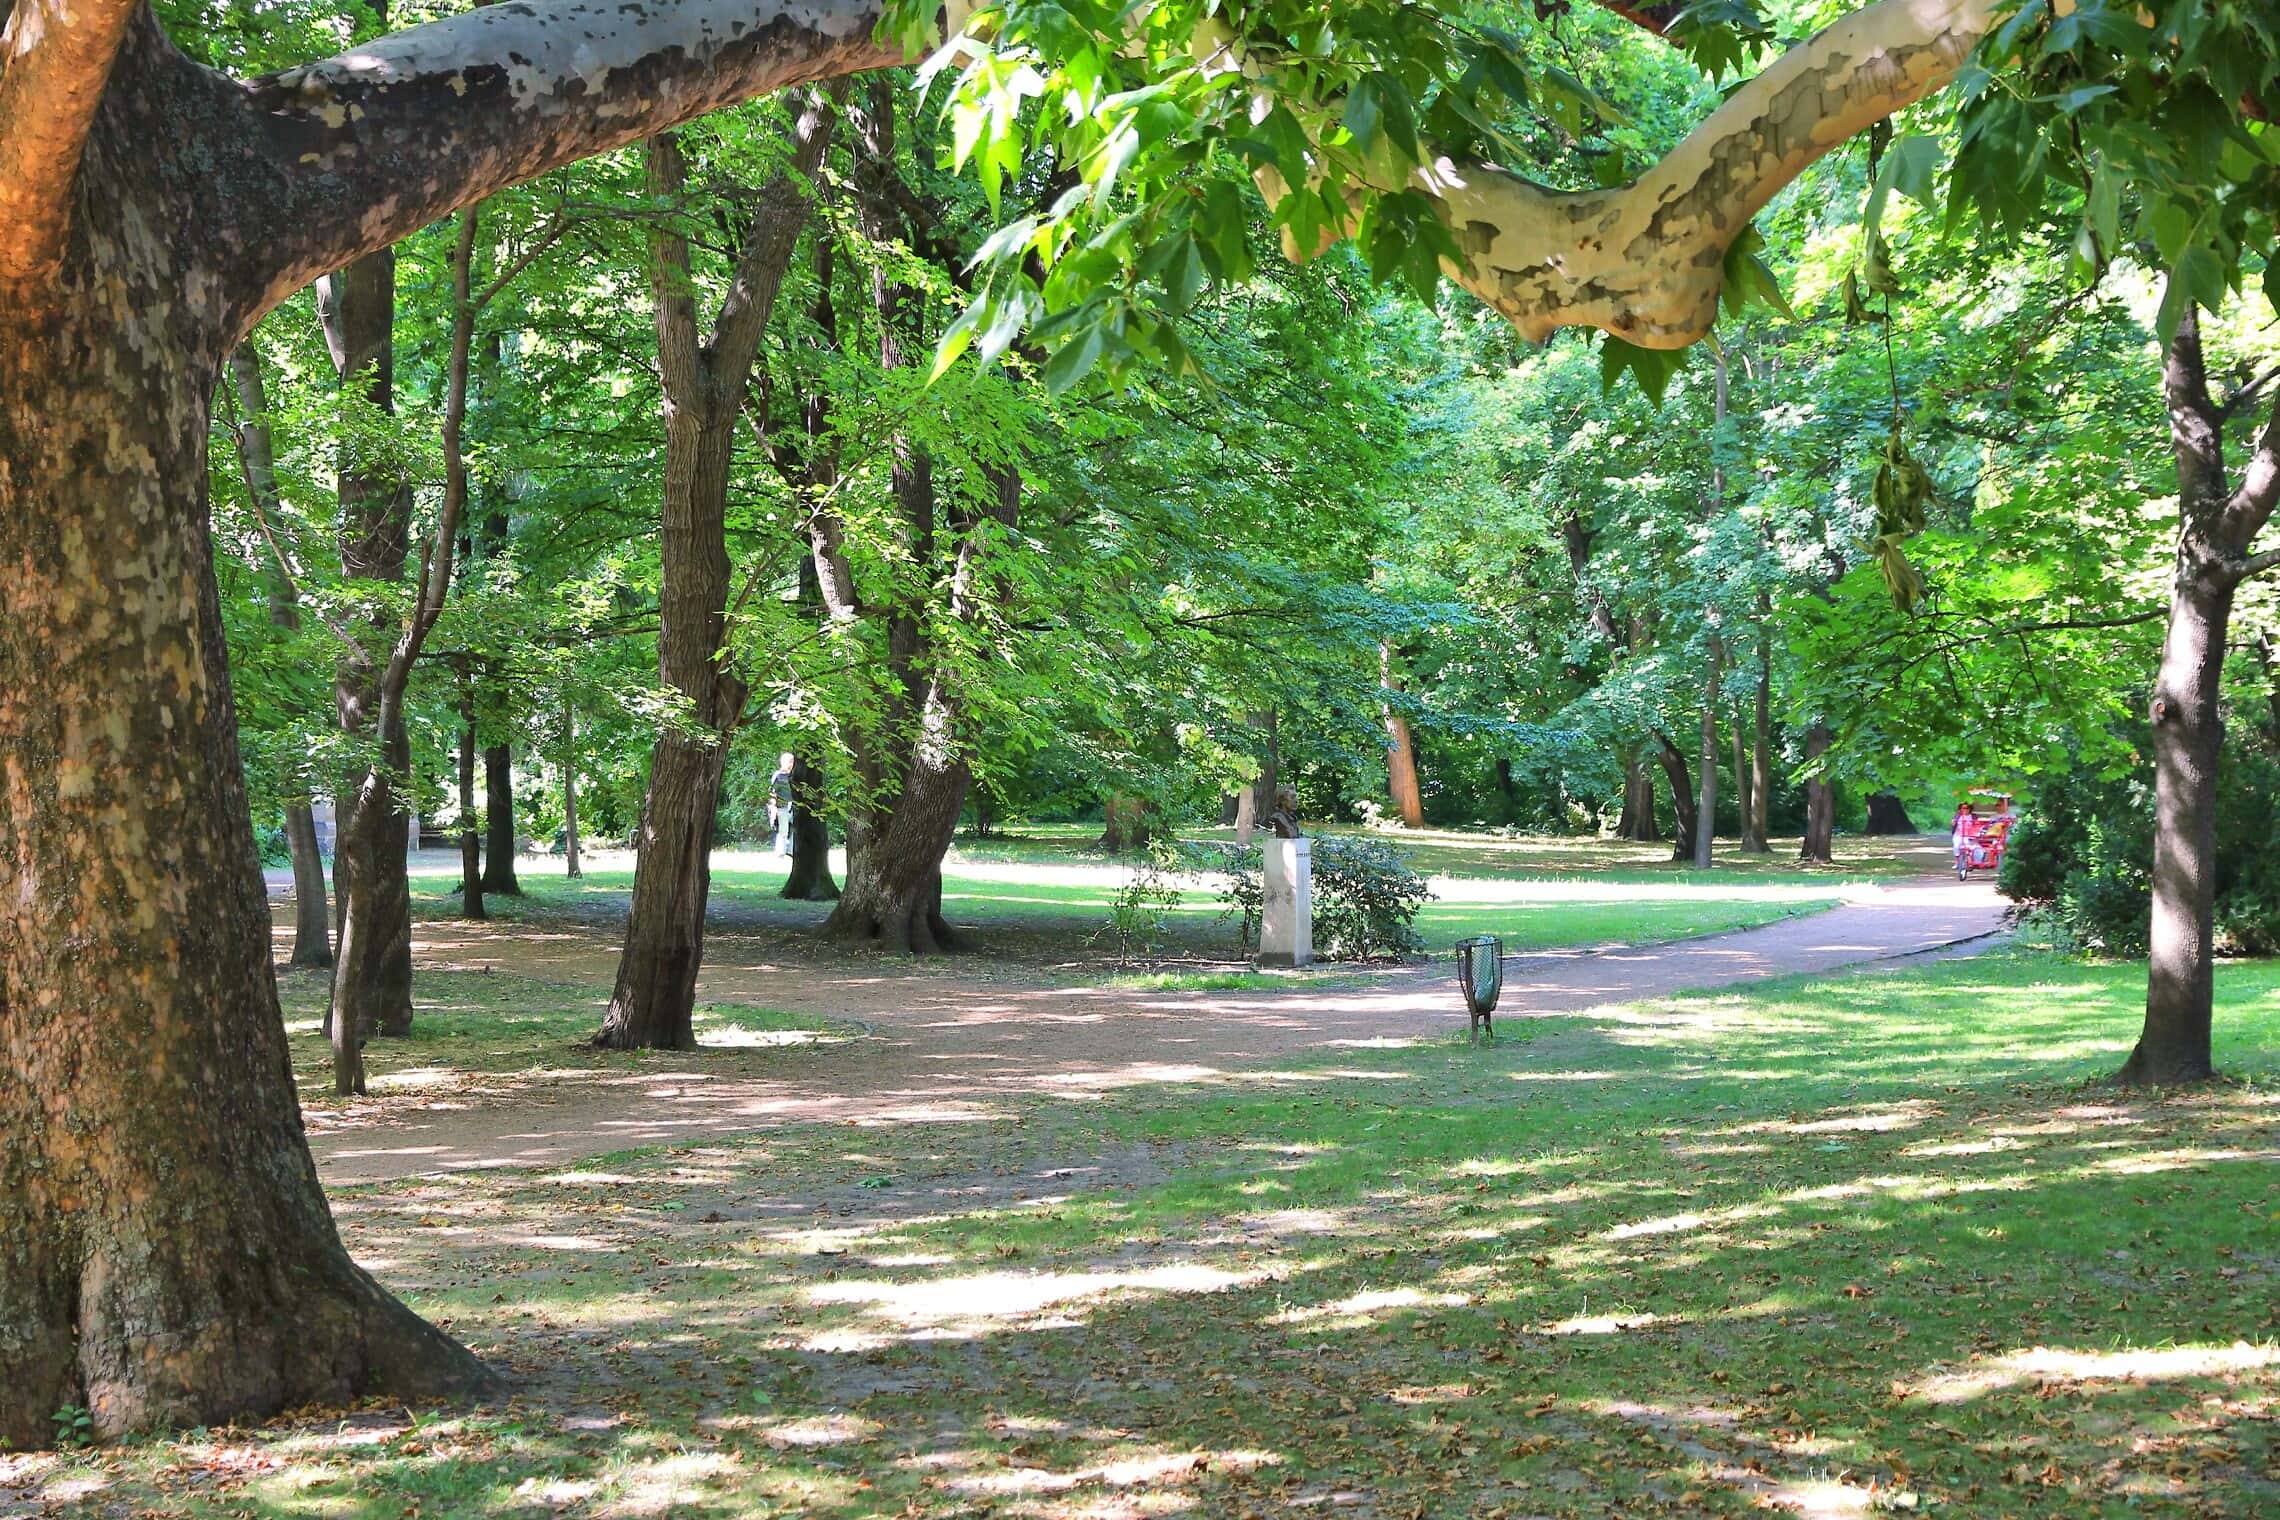 שבילי טיול בפארק שעל האי מרגיט בבודפשט (צילום: iStock)